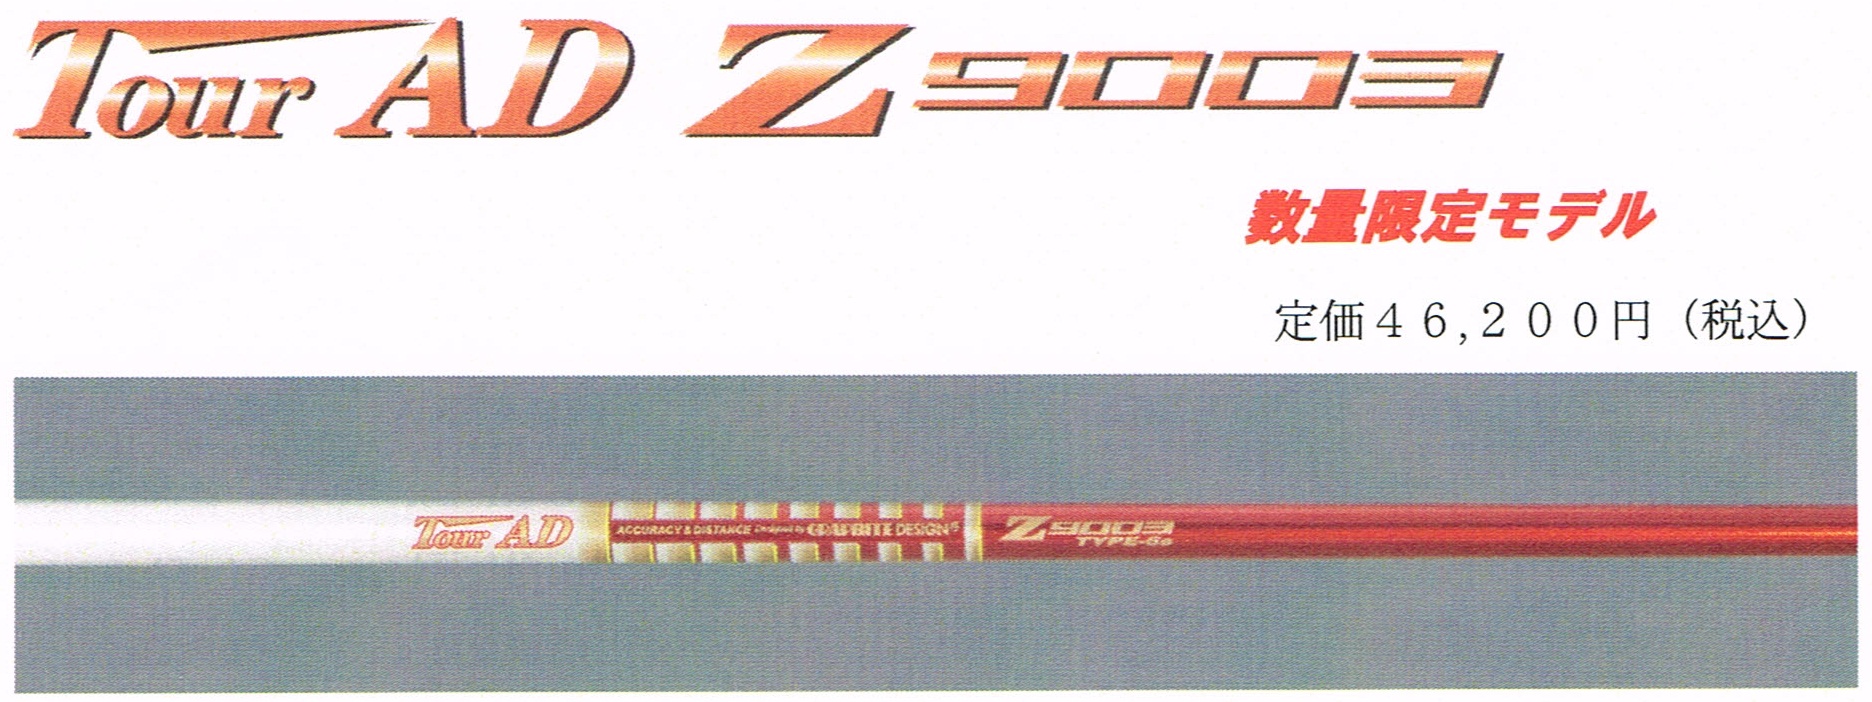 ツアーAD Z9003-